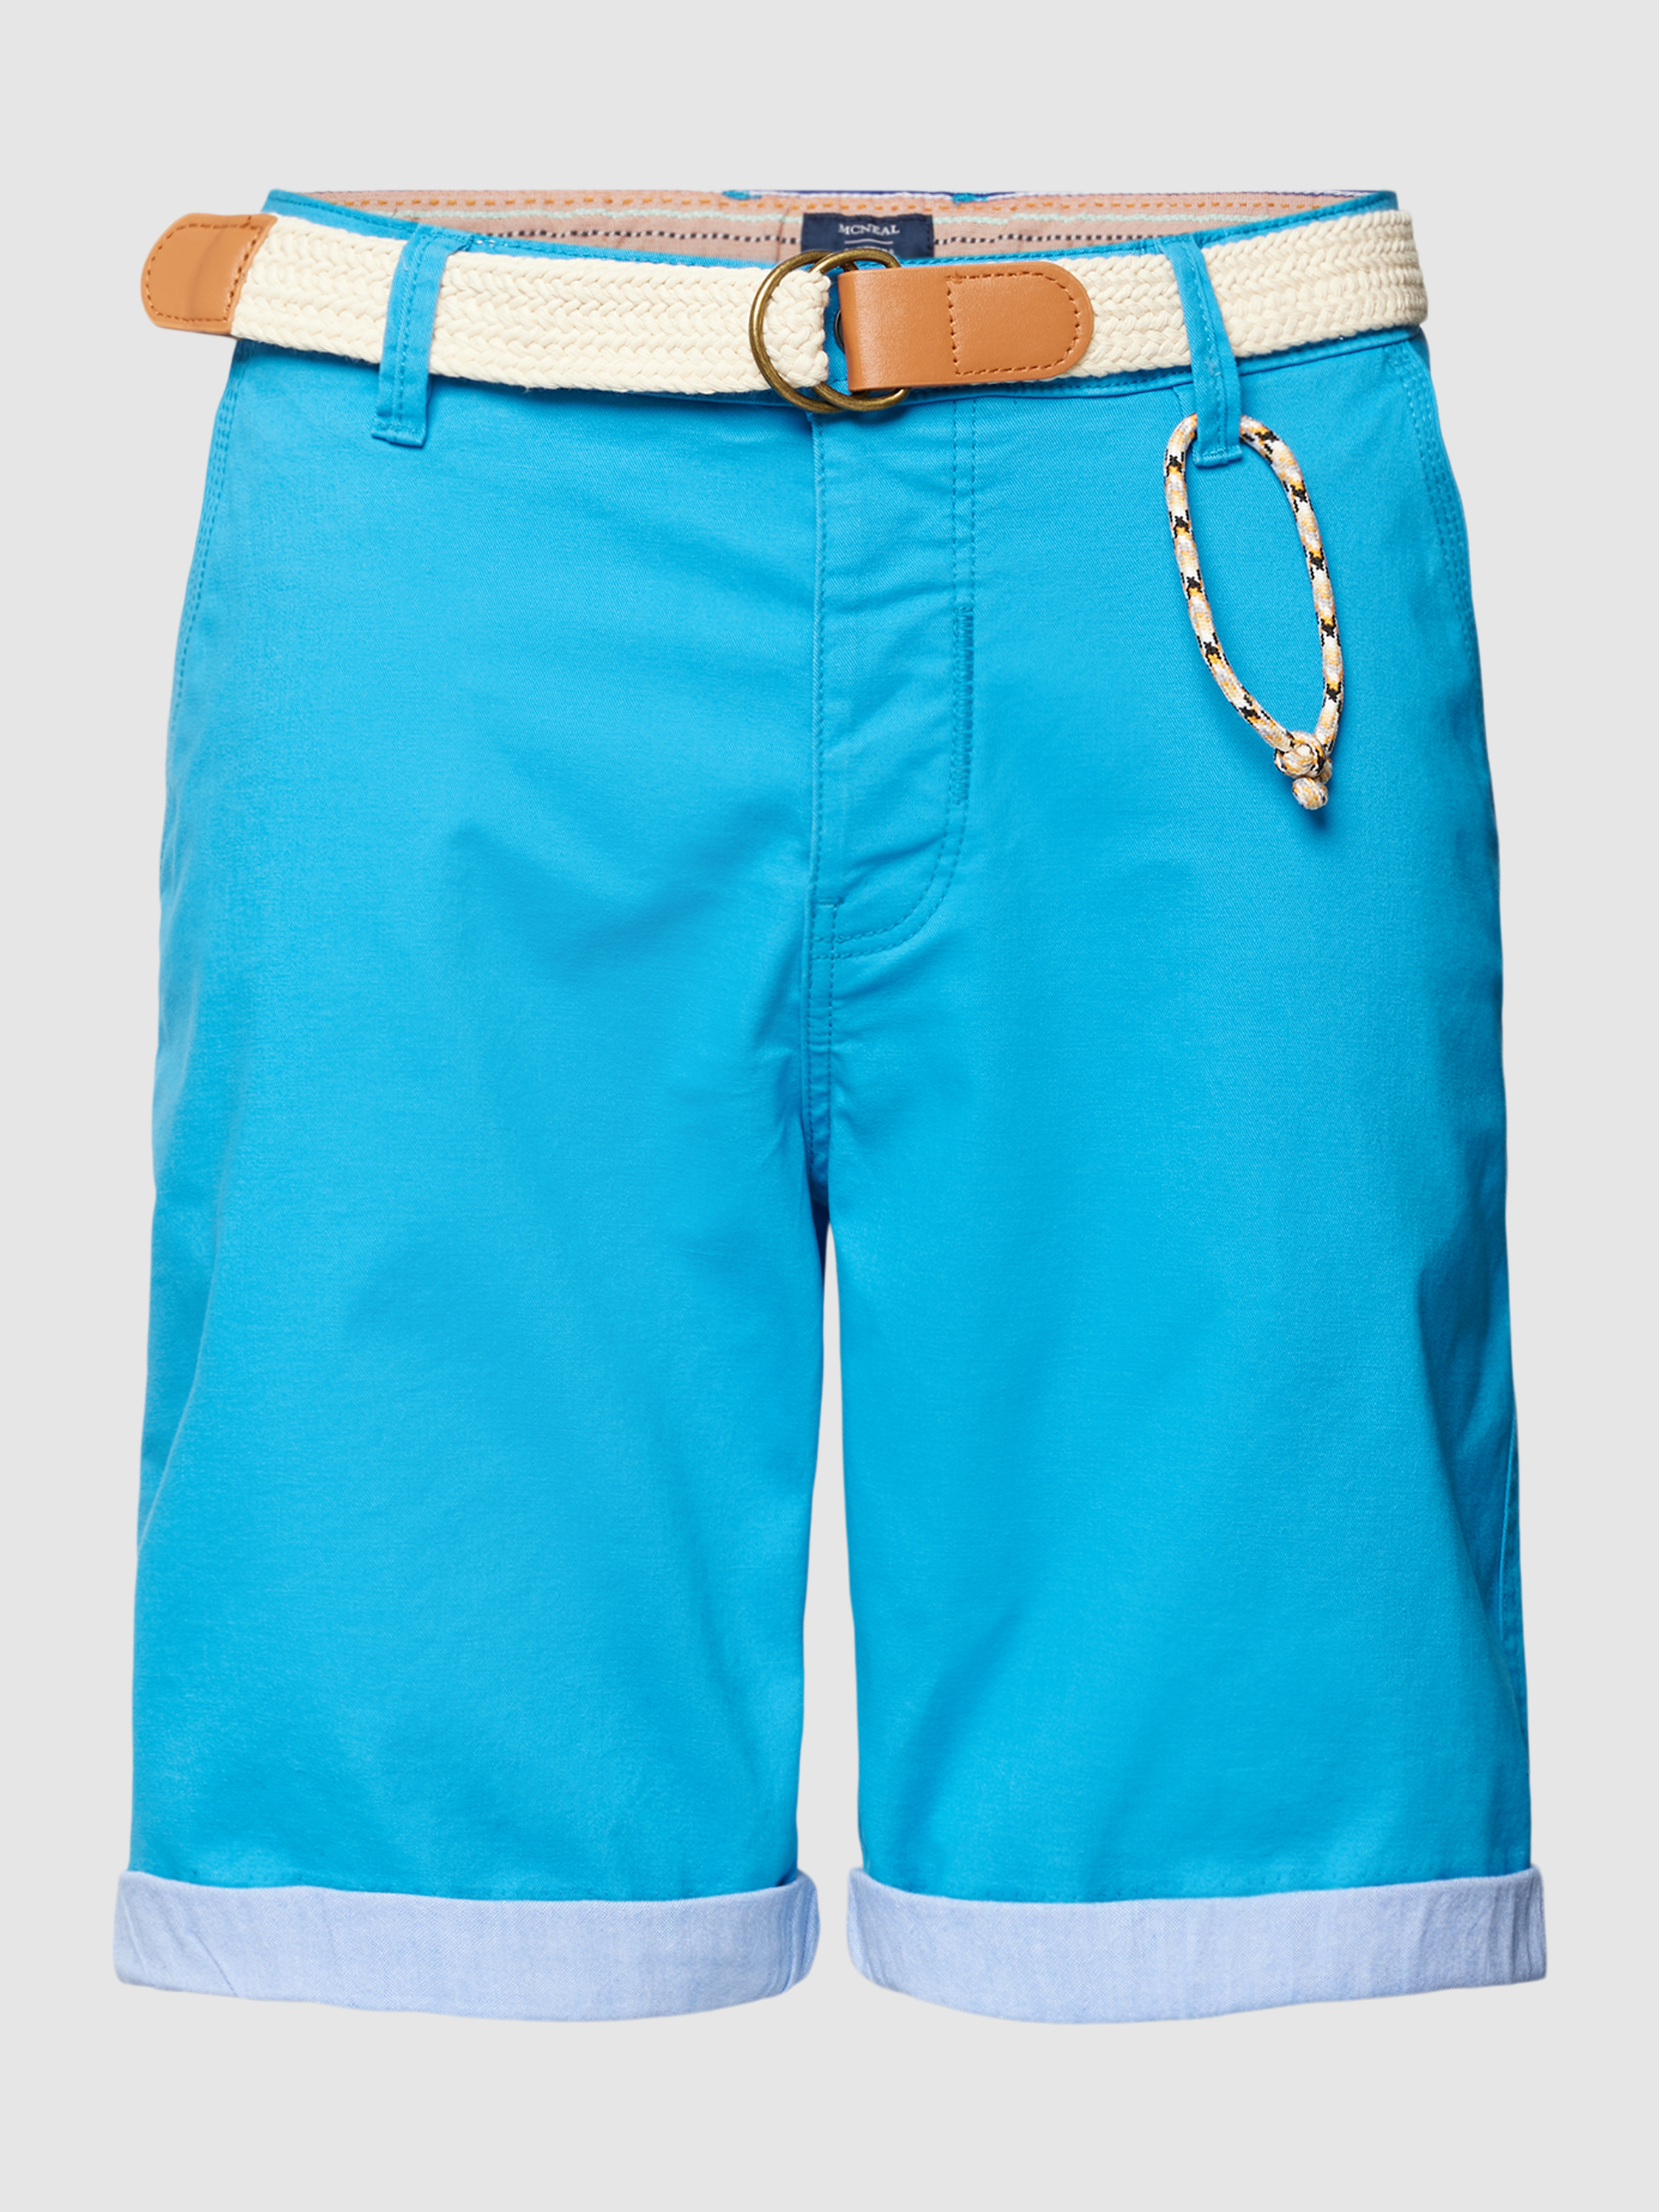 Повседневные шорты мужские McNeal 1771231 голубые XL (доставка из-за рубежа)